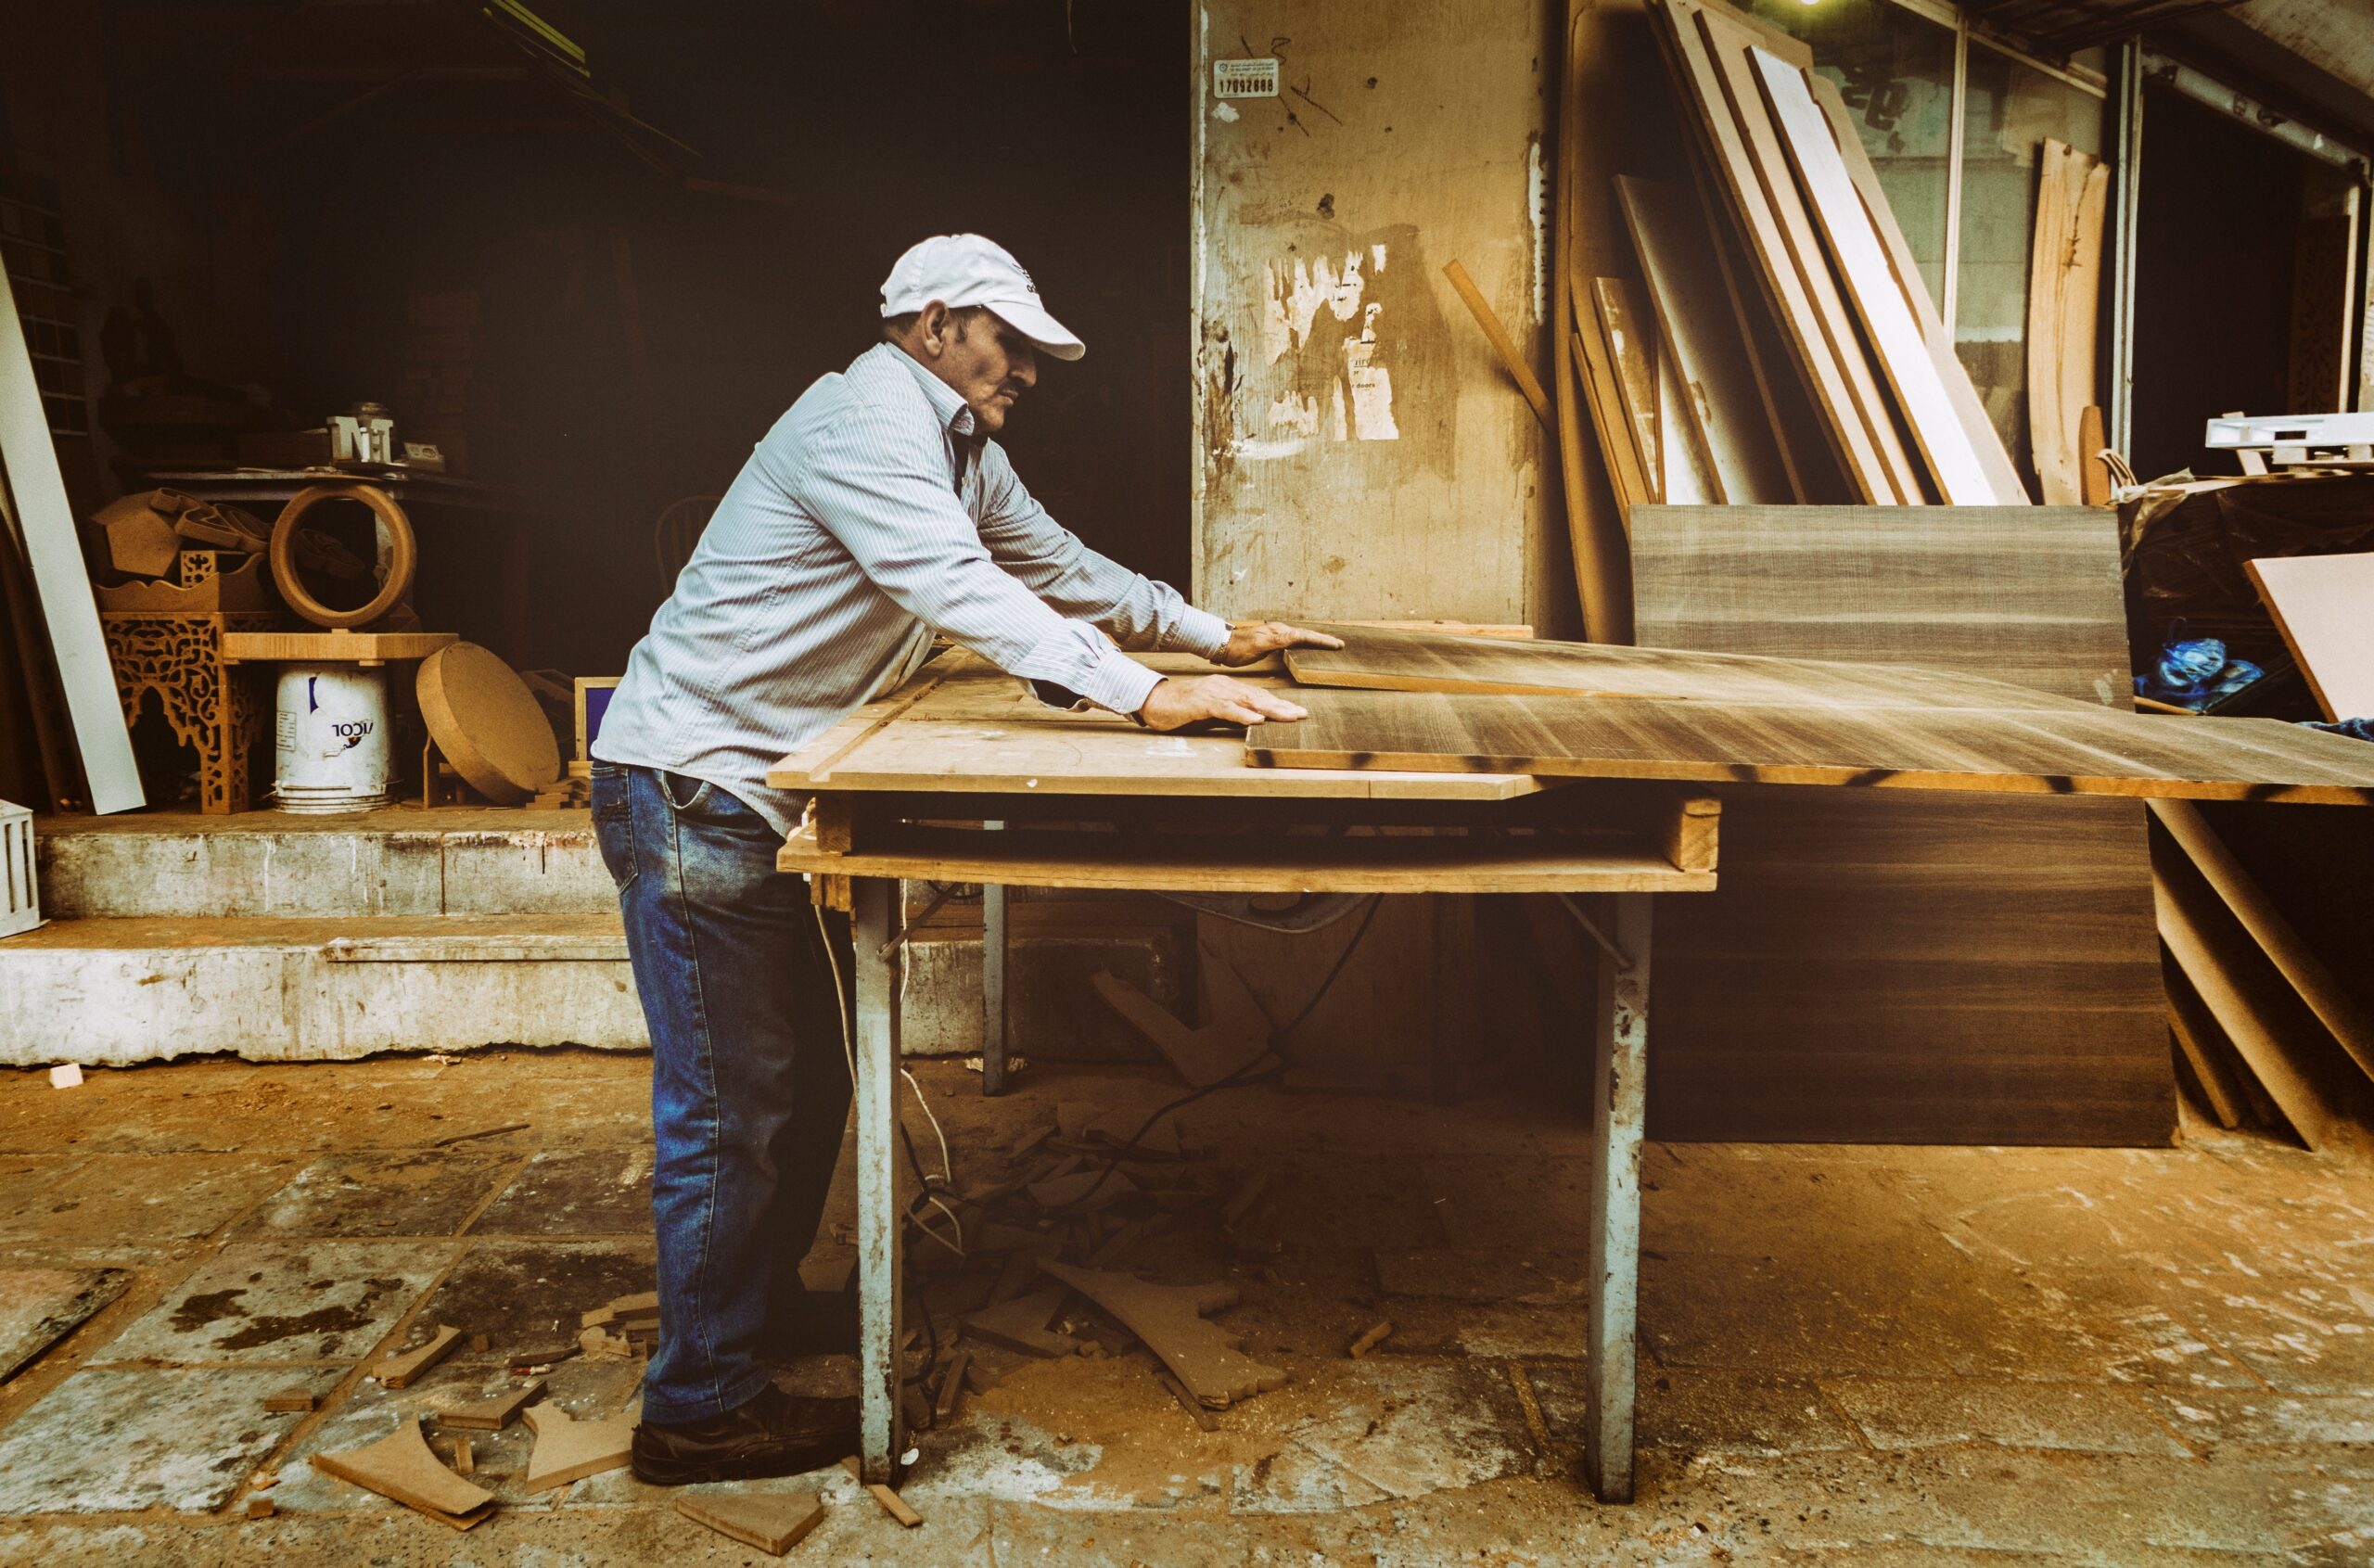  Afacere cu lemn, de la exploatare responsabilă, la construcții sau fabricarea de mobilă 